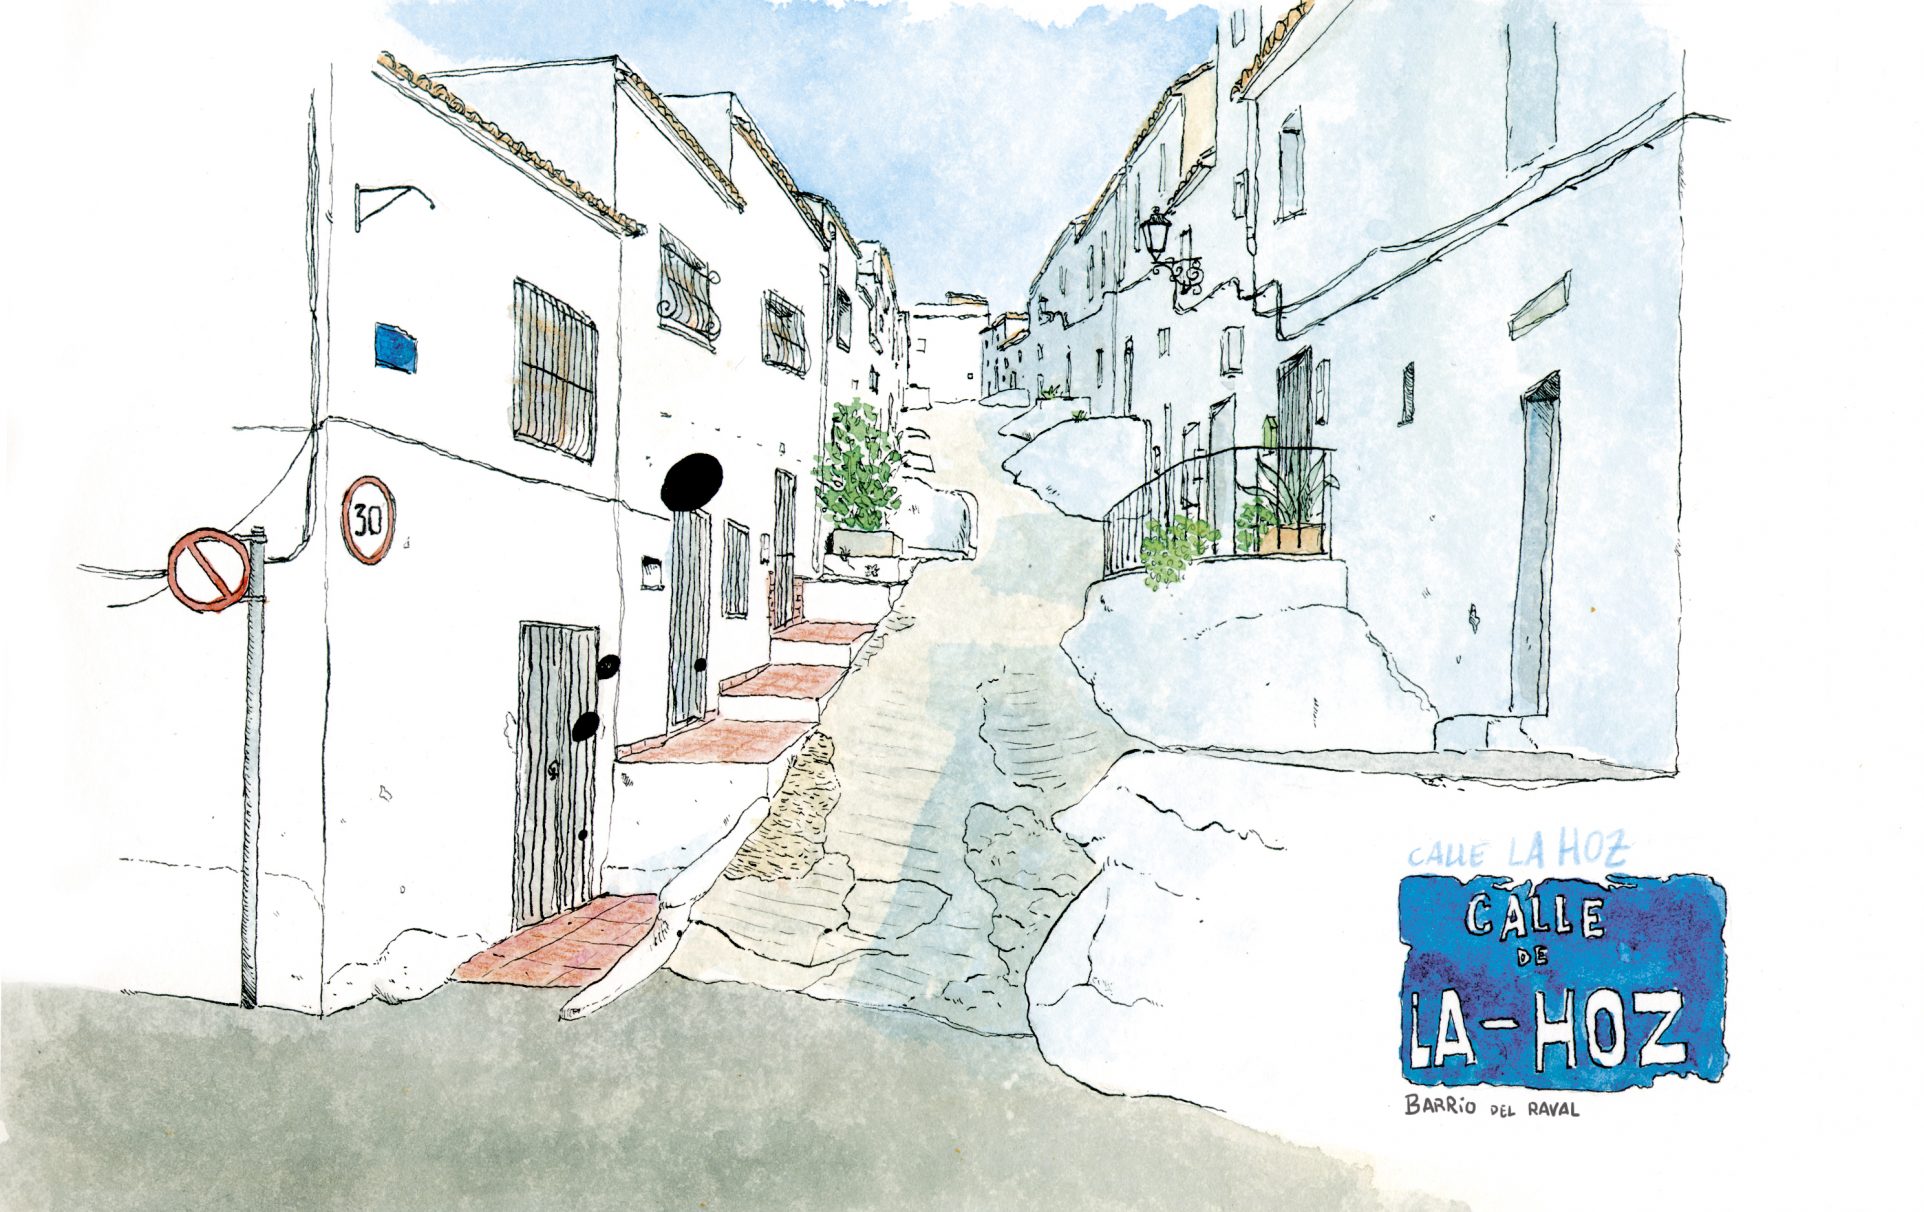 Acuarela dibujo de la calle de la Hoz, Oliva (Valencia). Paisaje estilo urban sketchers. Souvenirs de la comunidad valenciana. Arte para decorar